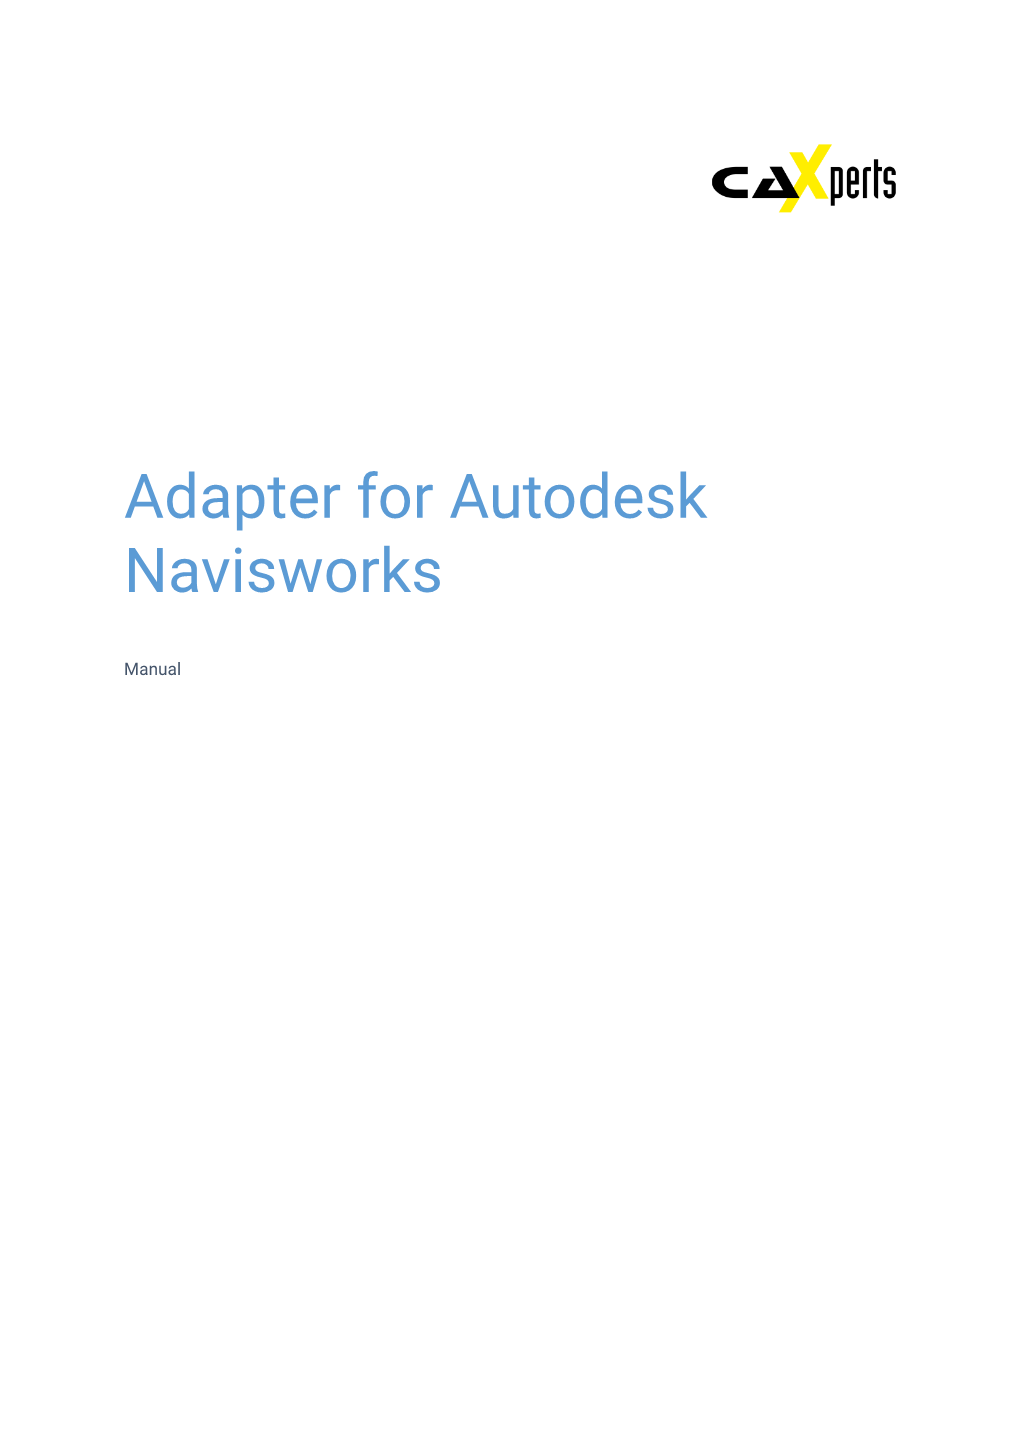 Adapter for Autodesk Navisworks